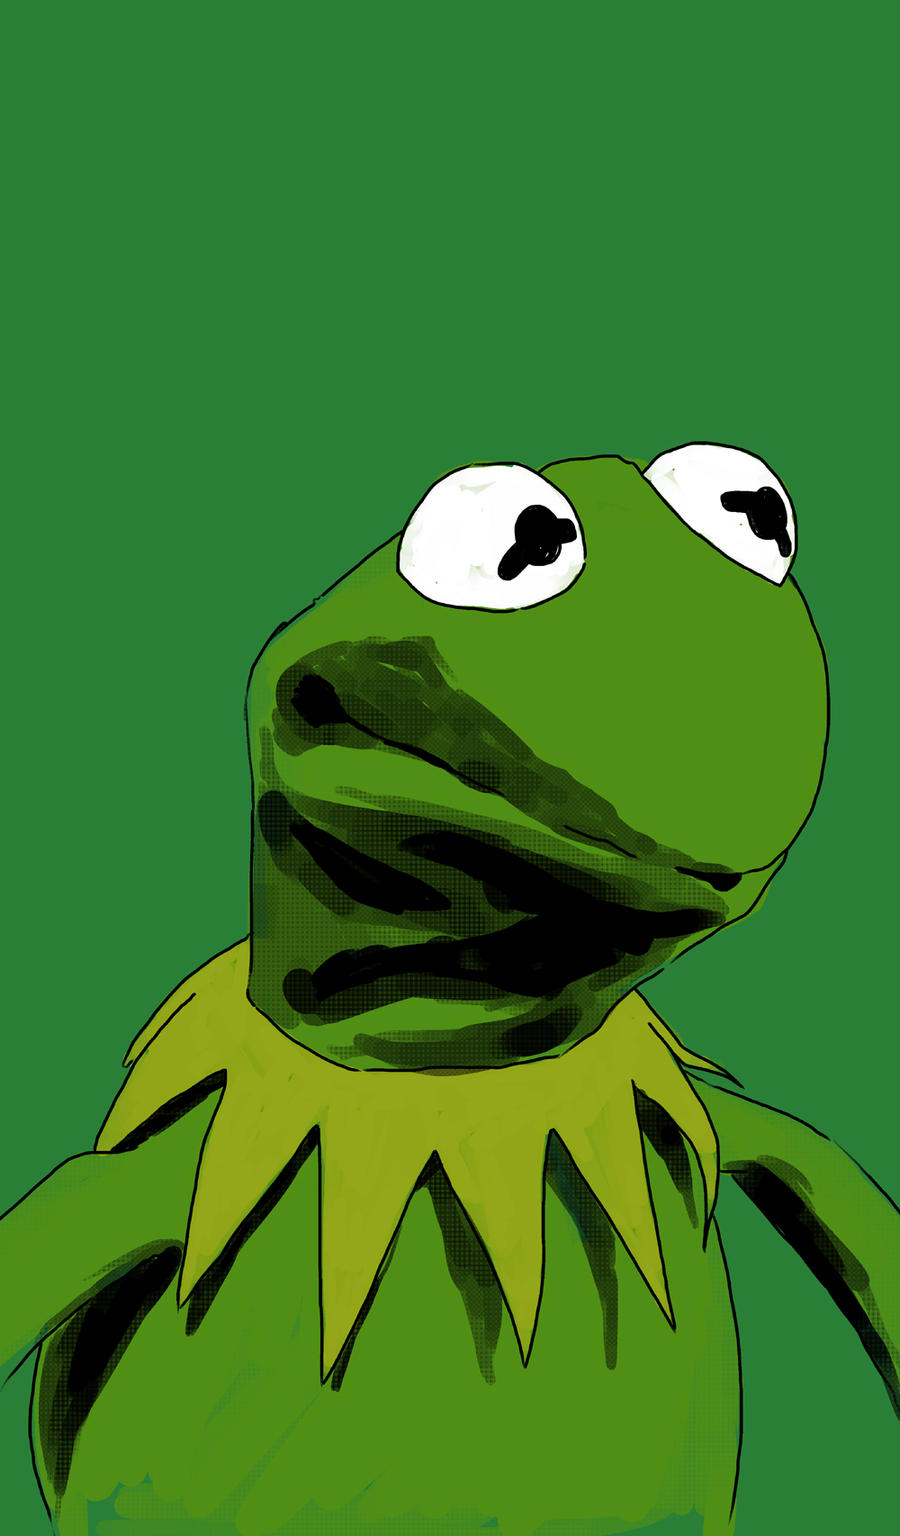 DSC Kermit the Frog by JonathanWyke on DeviantArt